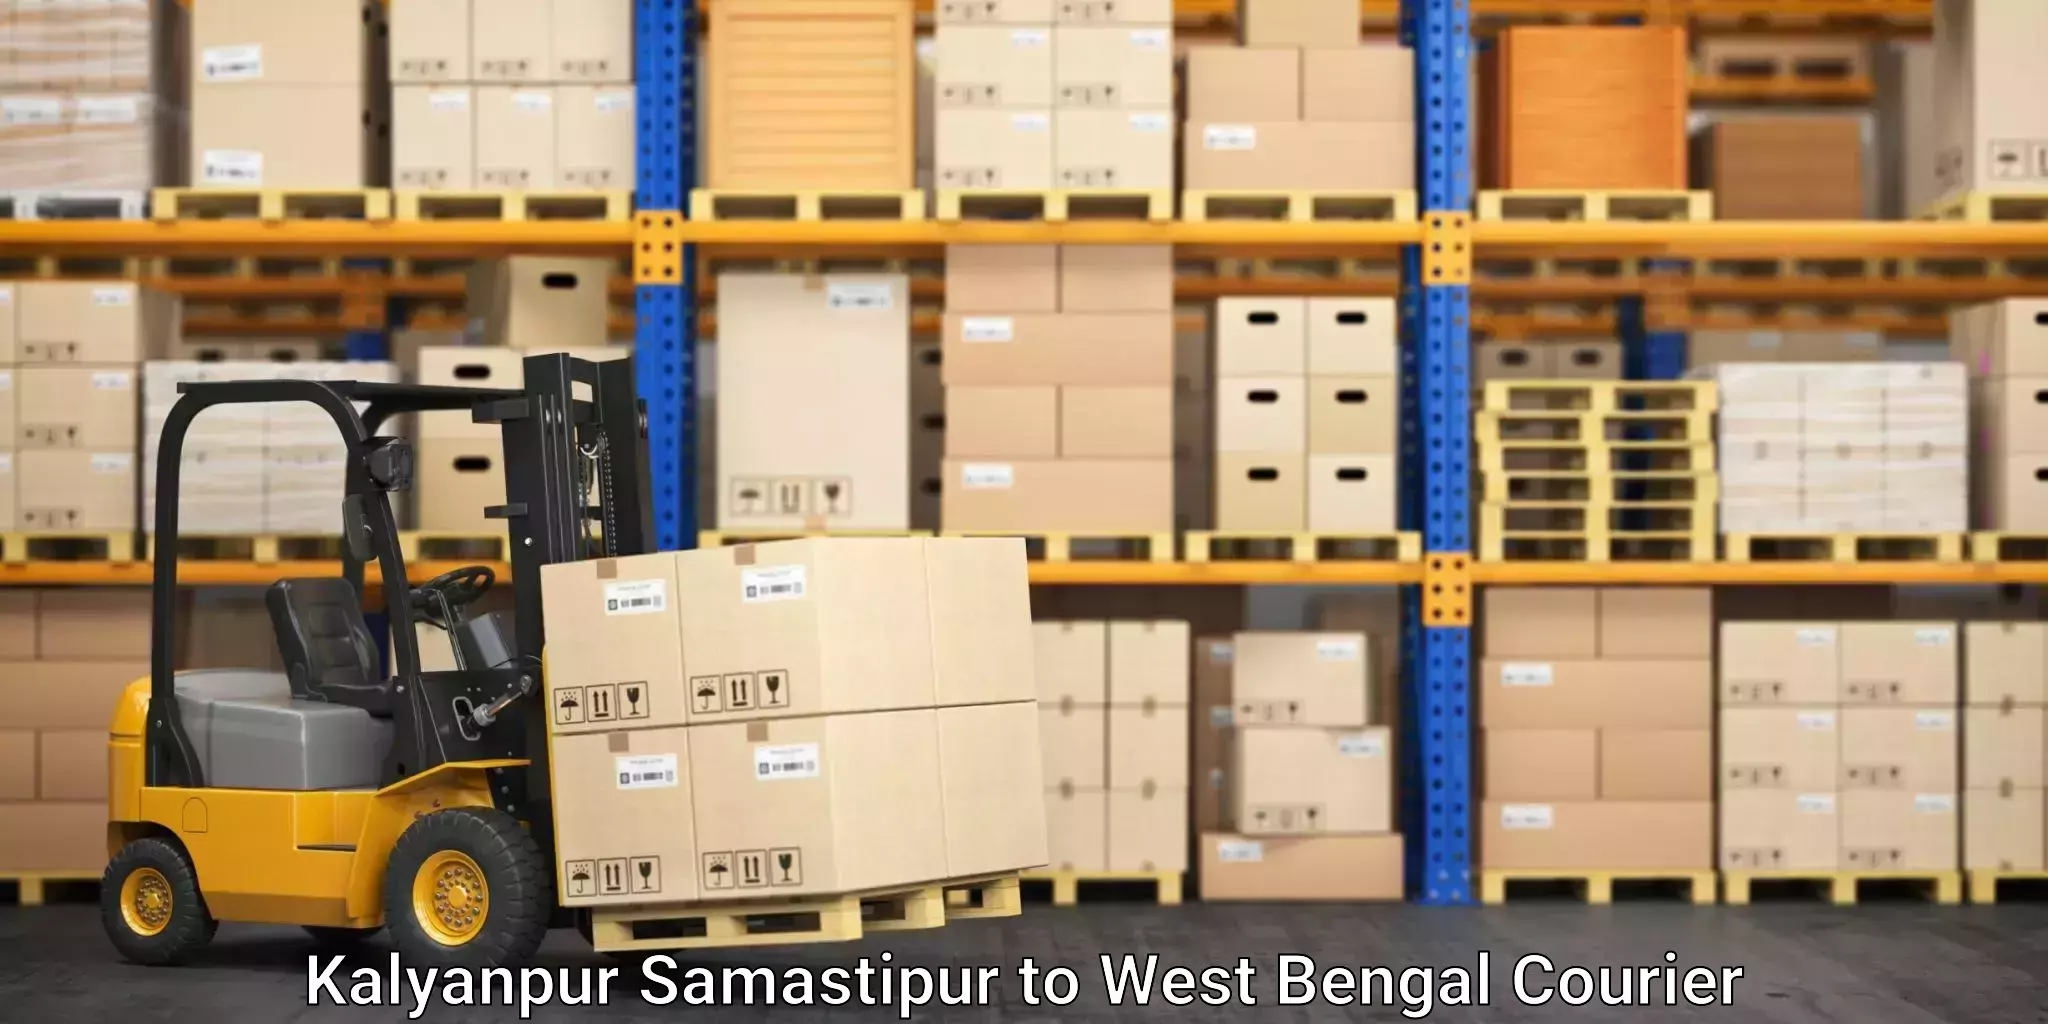 Furniture transport experts Kalyanpur Samastipur to Bajkul